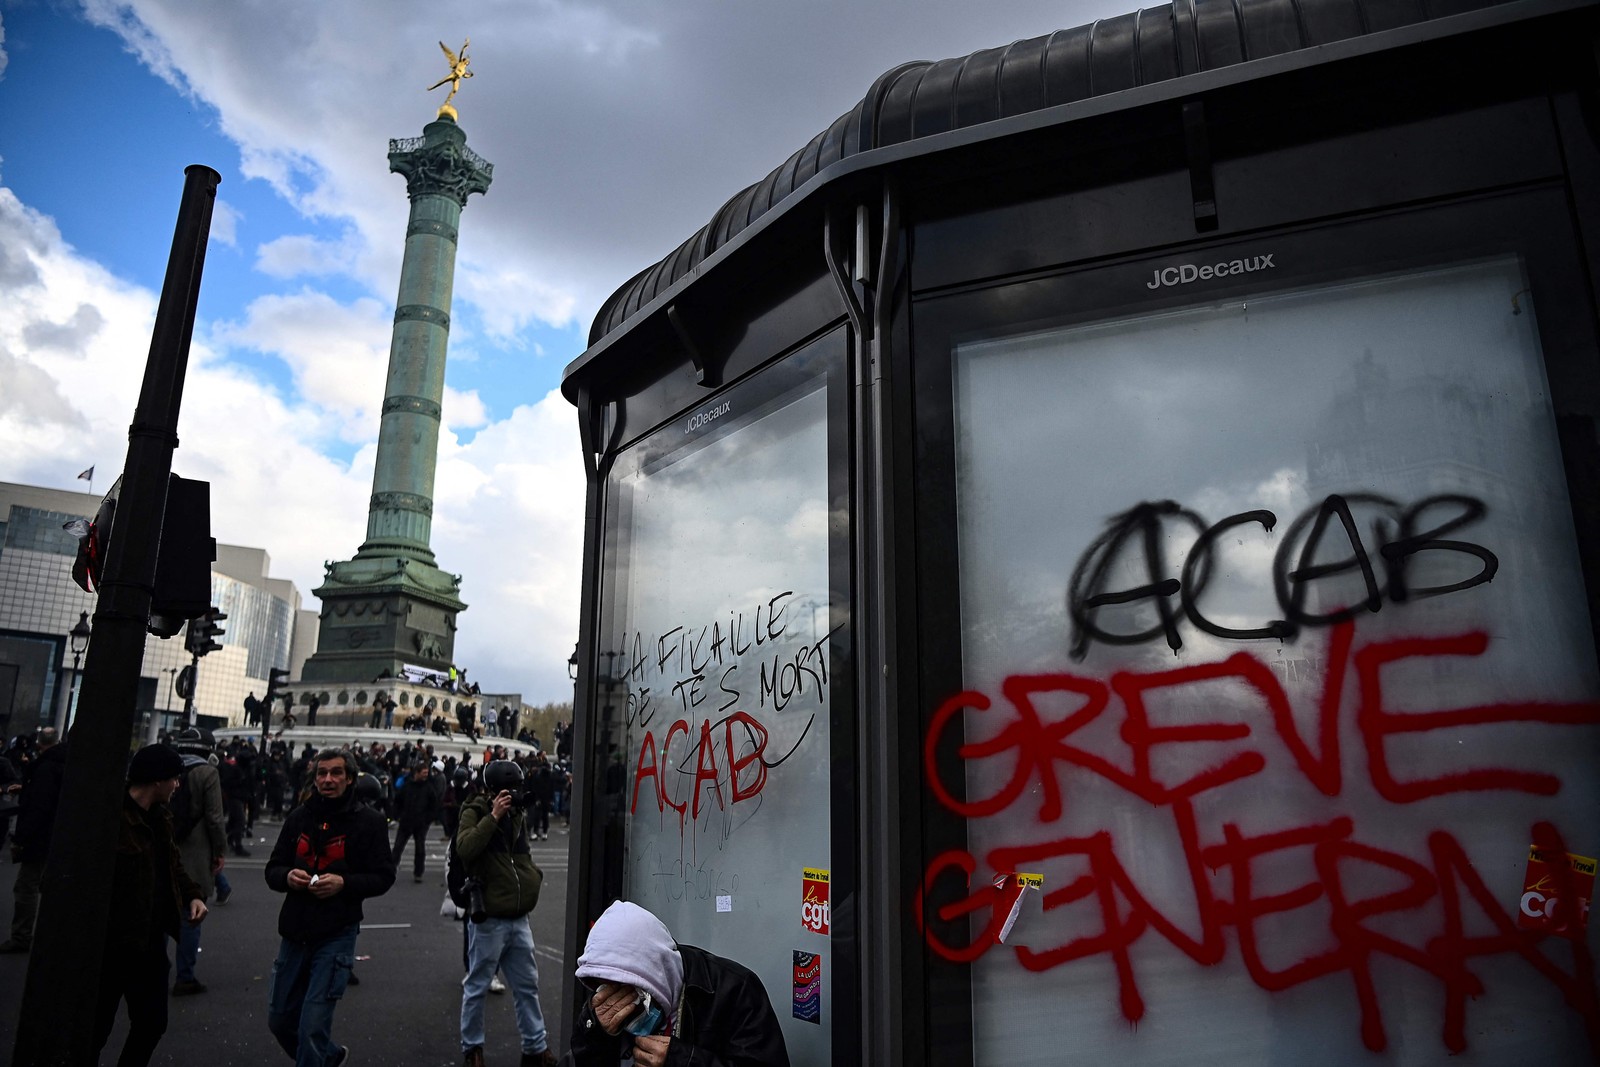 Pichações de movimento grevista em uma banca de notícias na Praça da Bastilha  — Foto: Christophe ARCHAMBAULT / AFP